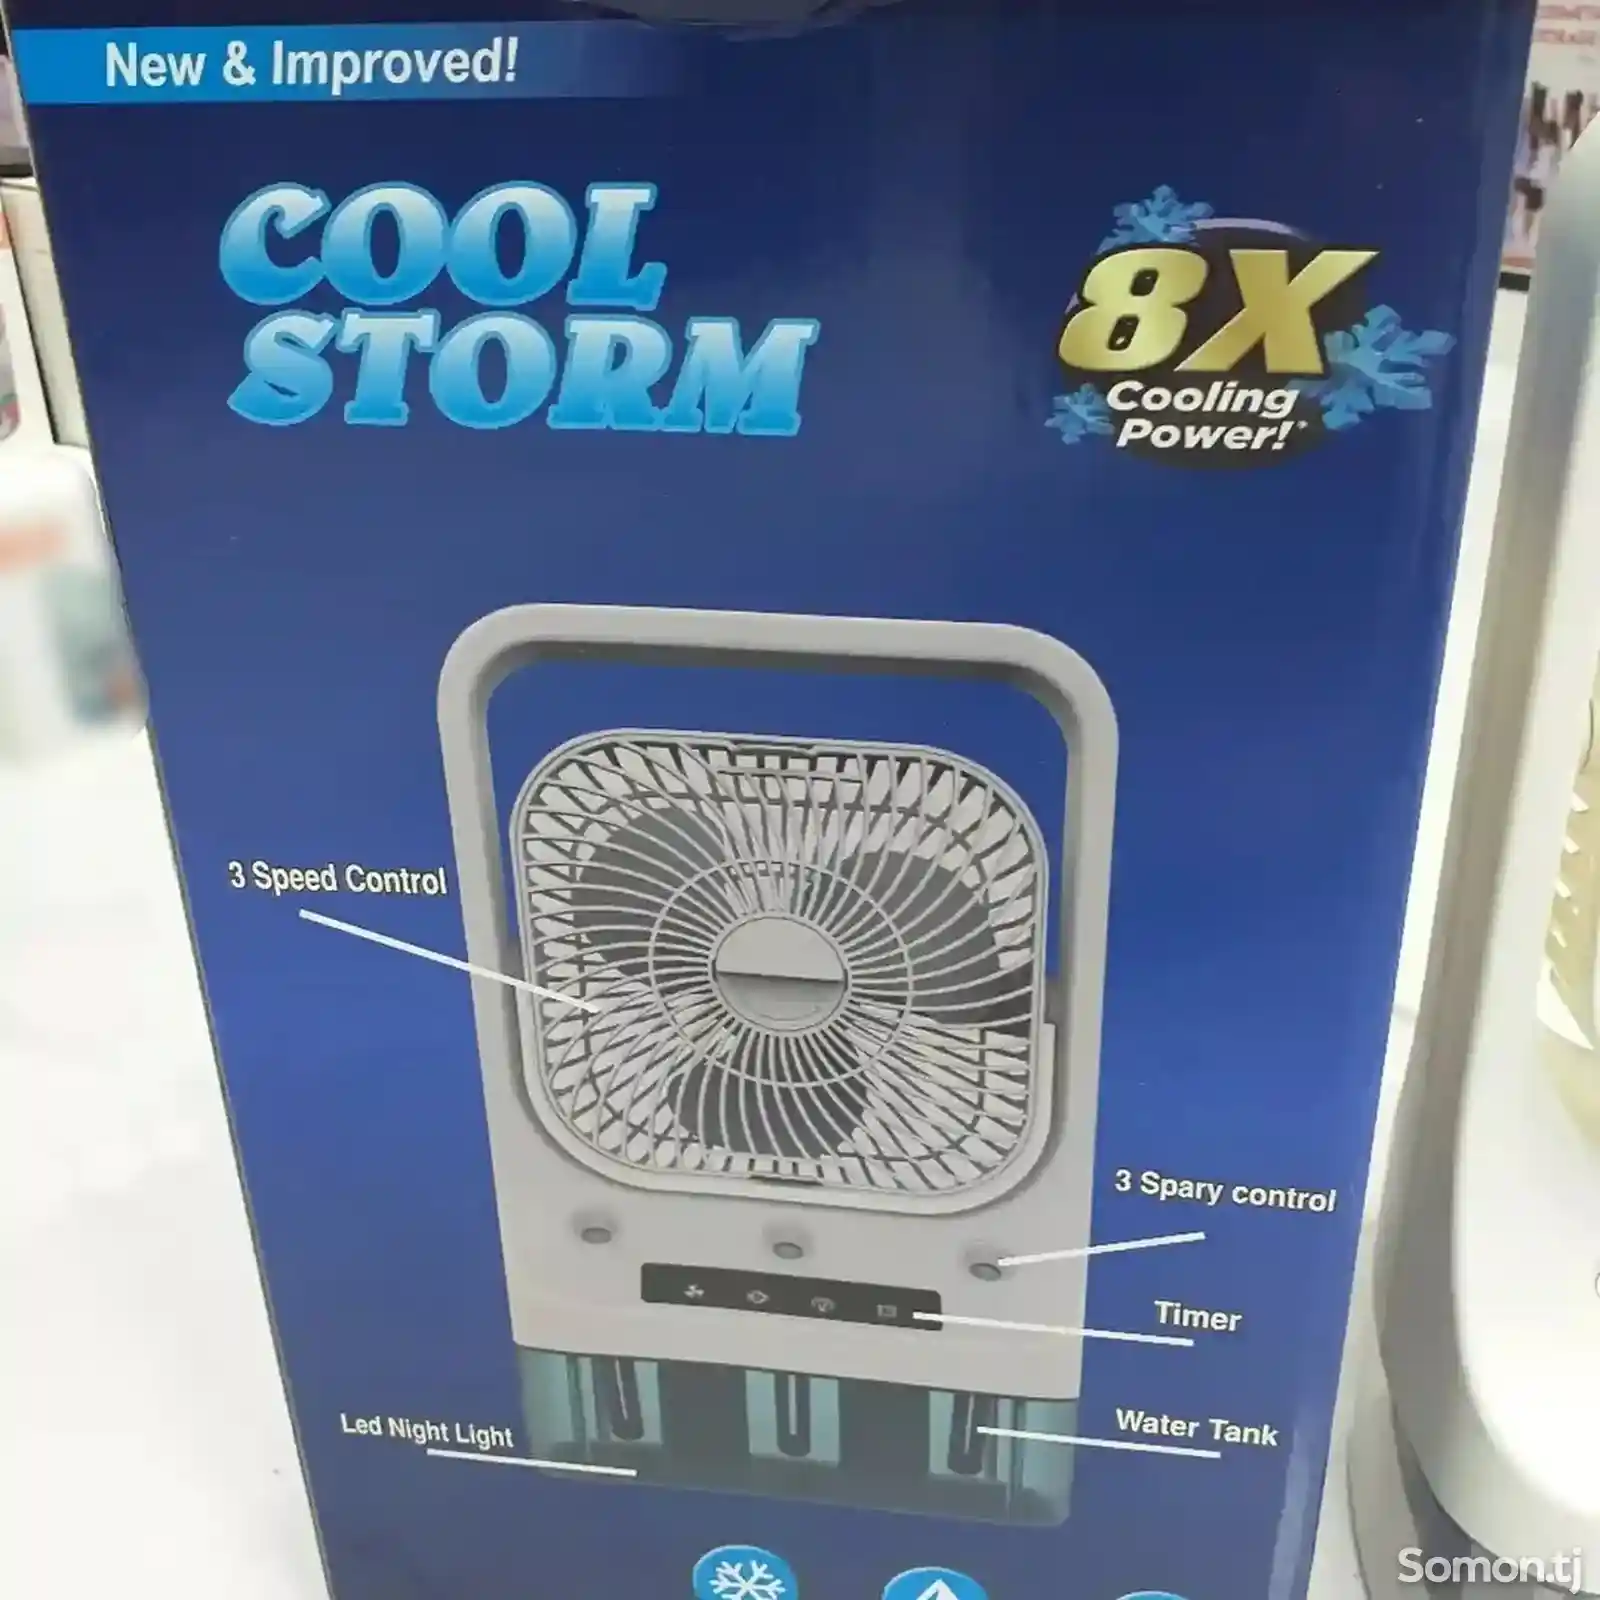 Вентилятор Cool Storm 8x, большой-2